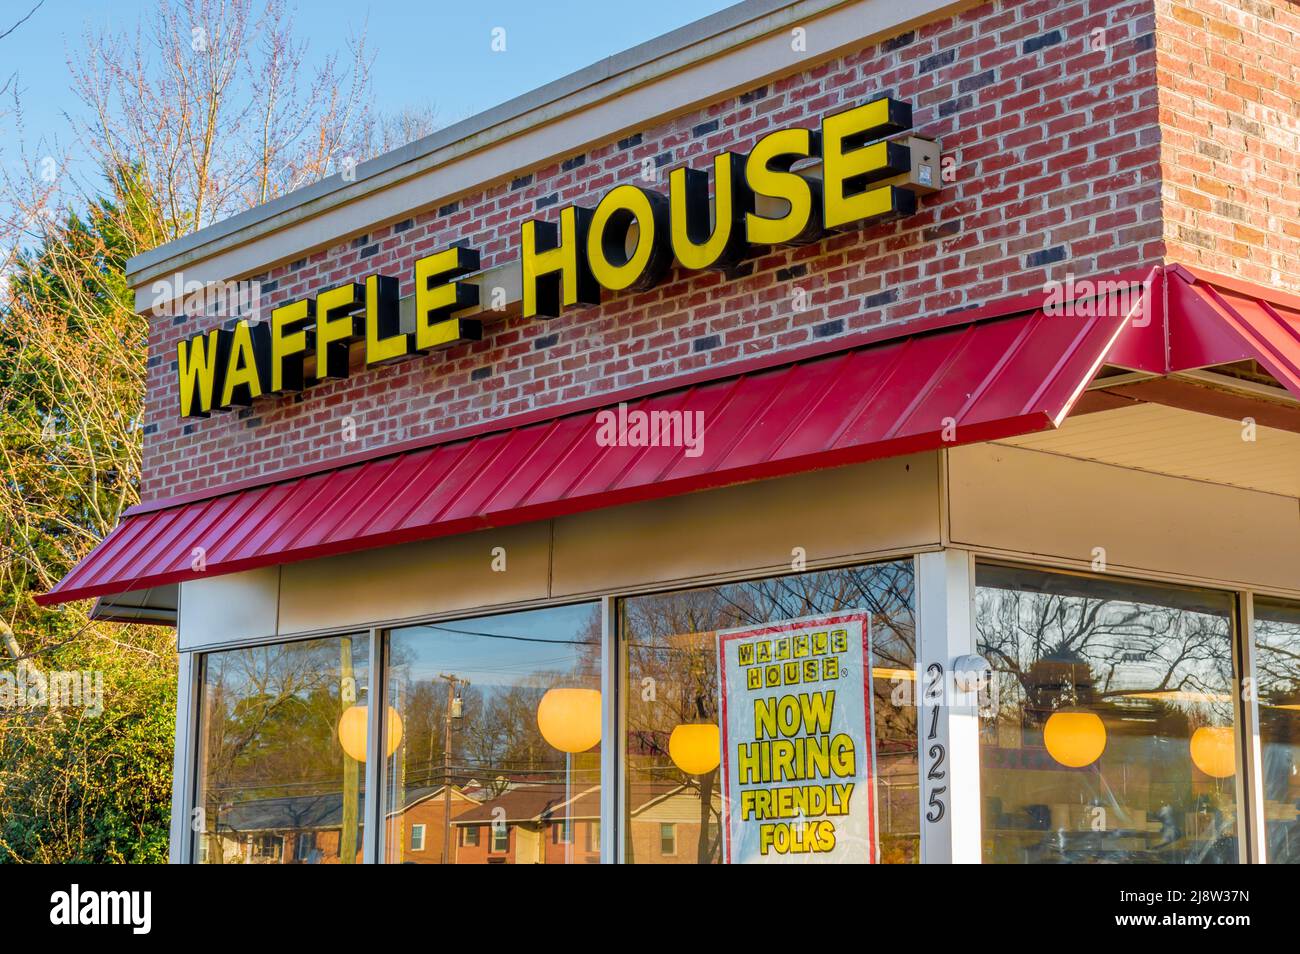 Esterno, facciata di marca e logo per 'waffle House', ristorante informale in giallo, lettere a blocchi sopra tenda rossa e finestre di vetro. Foto Stock